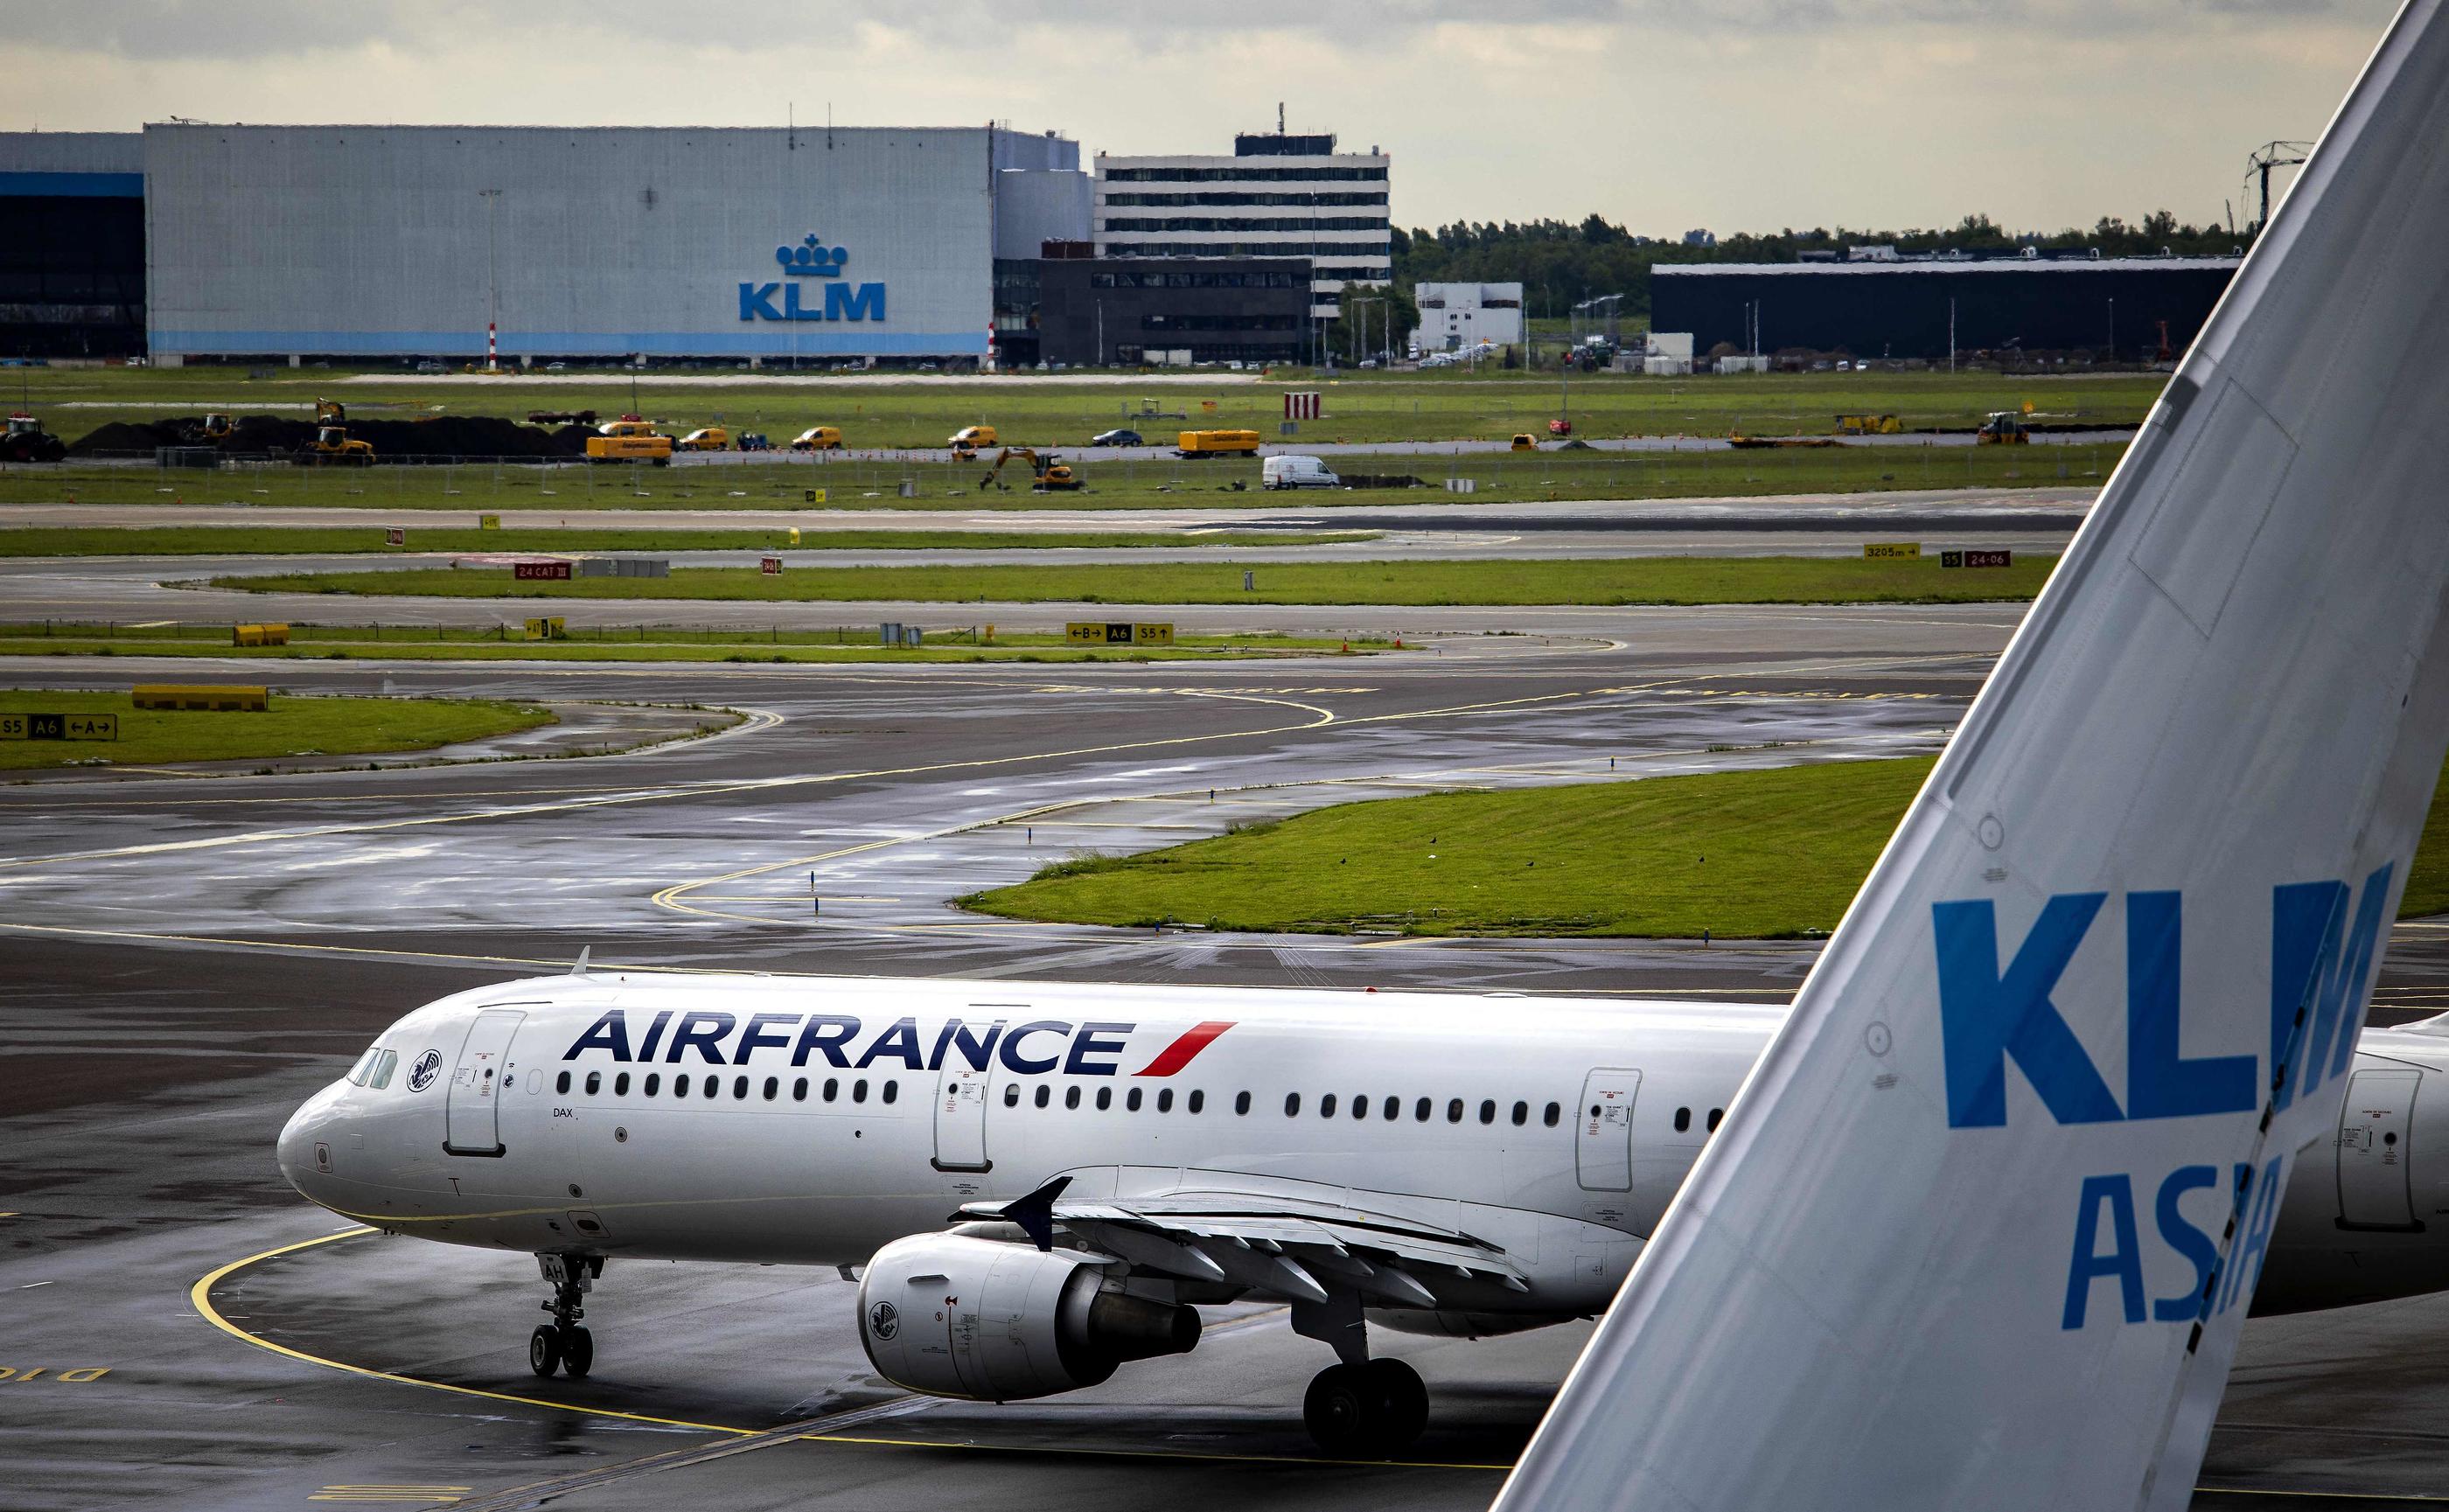 Un avion d'Air France photographié sur le tarmac de l'aéroport de Schiphol le 24 mai 2022. AFP/RAMON VAN FLYMEN